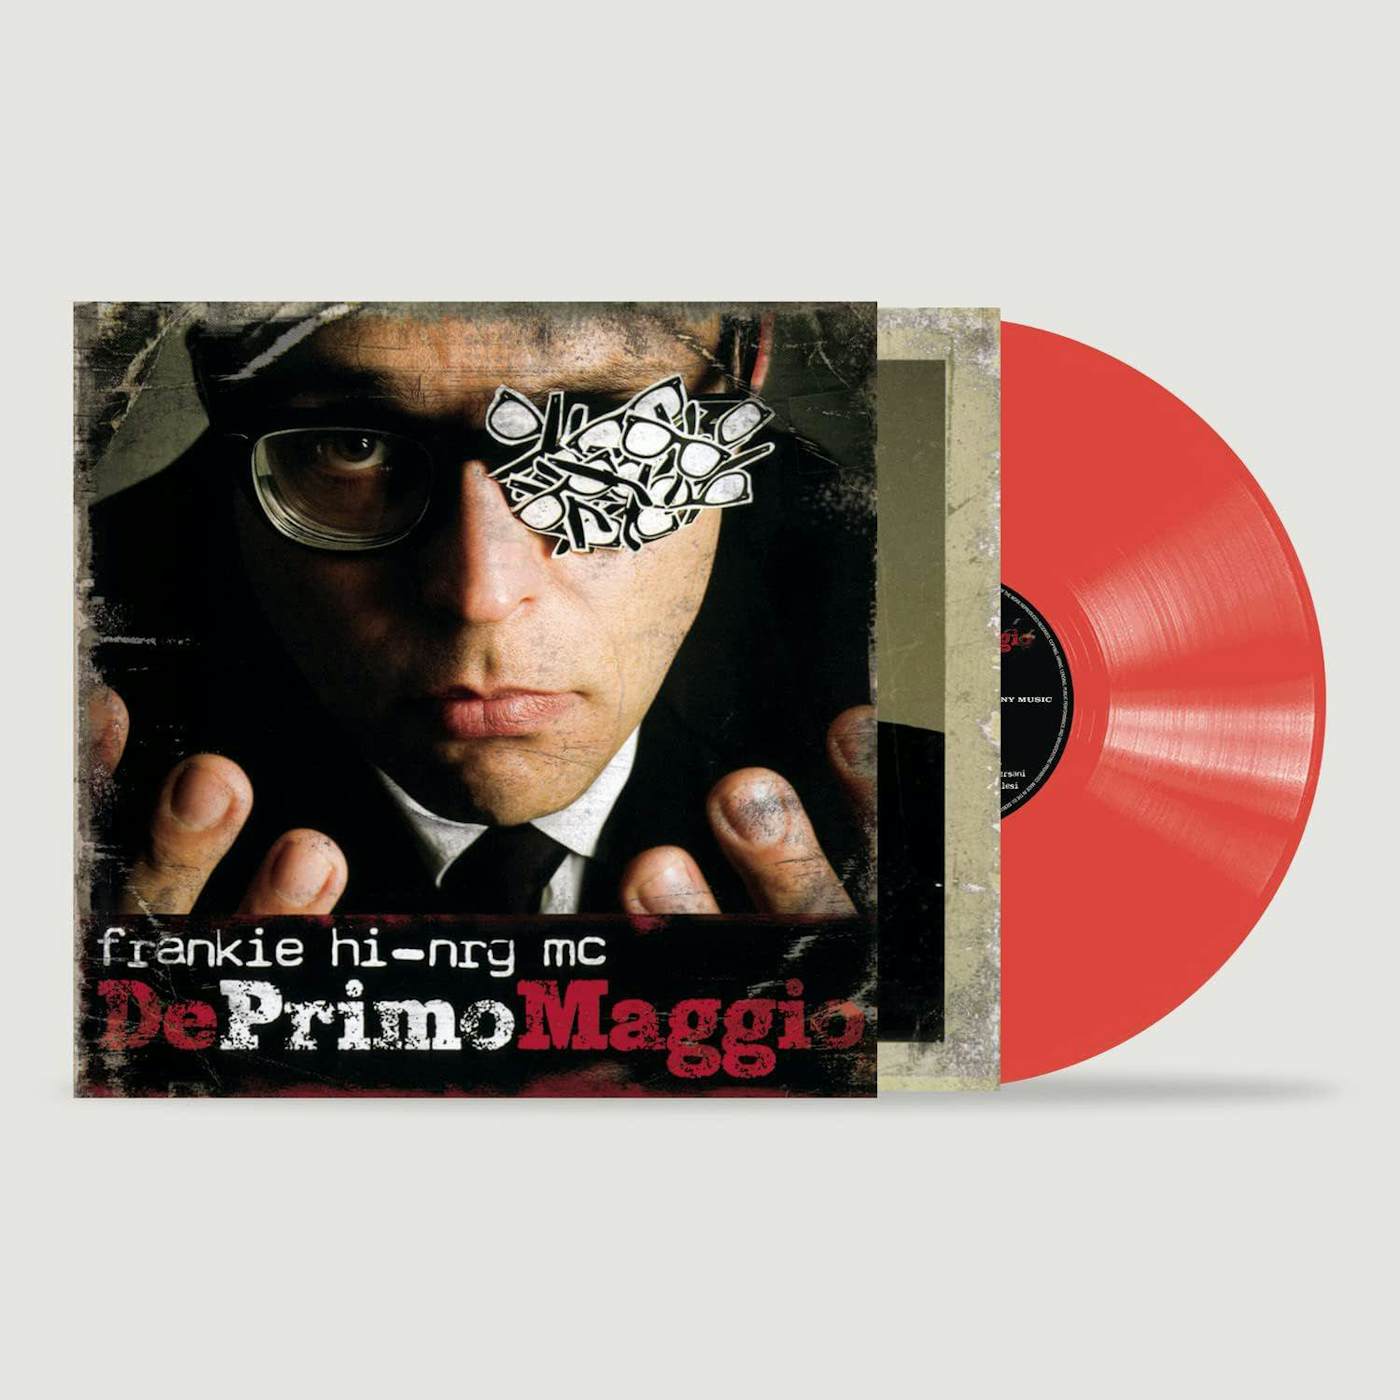 Frankie hi-nrg mc Deprimomaggio (Red) Vinyl Record